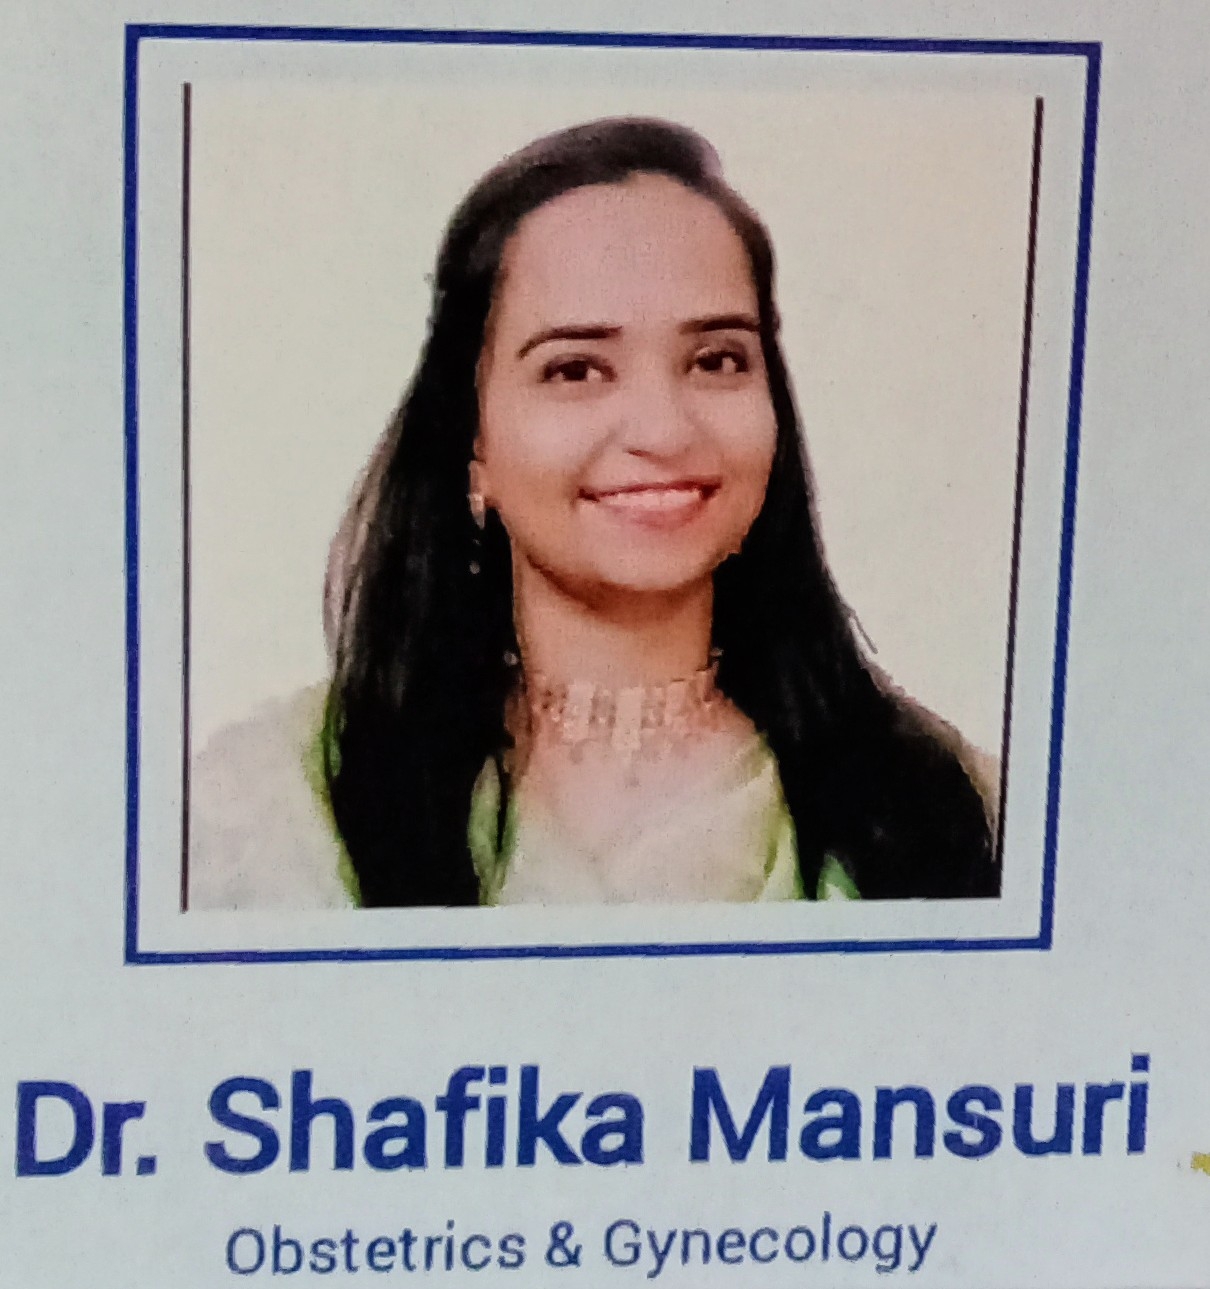 Dr. Shafika Mansuri